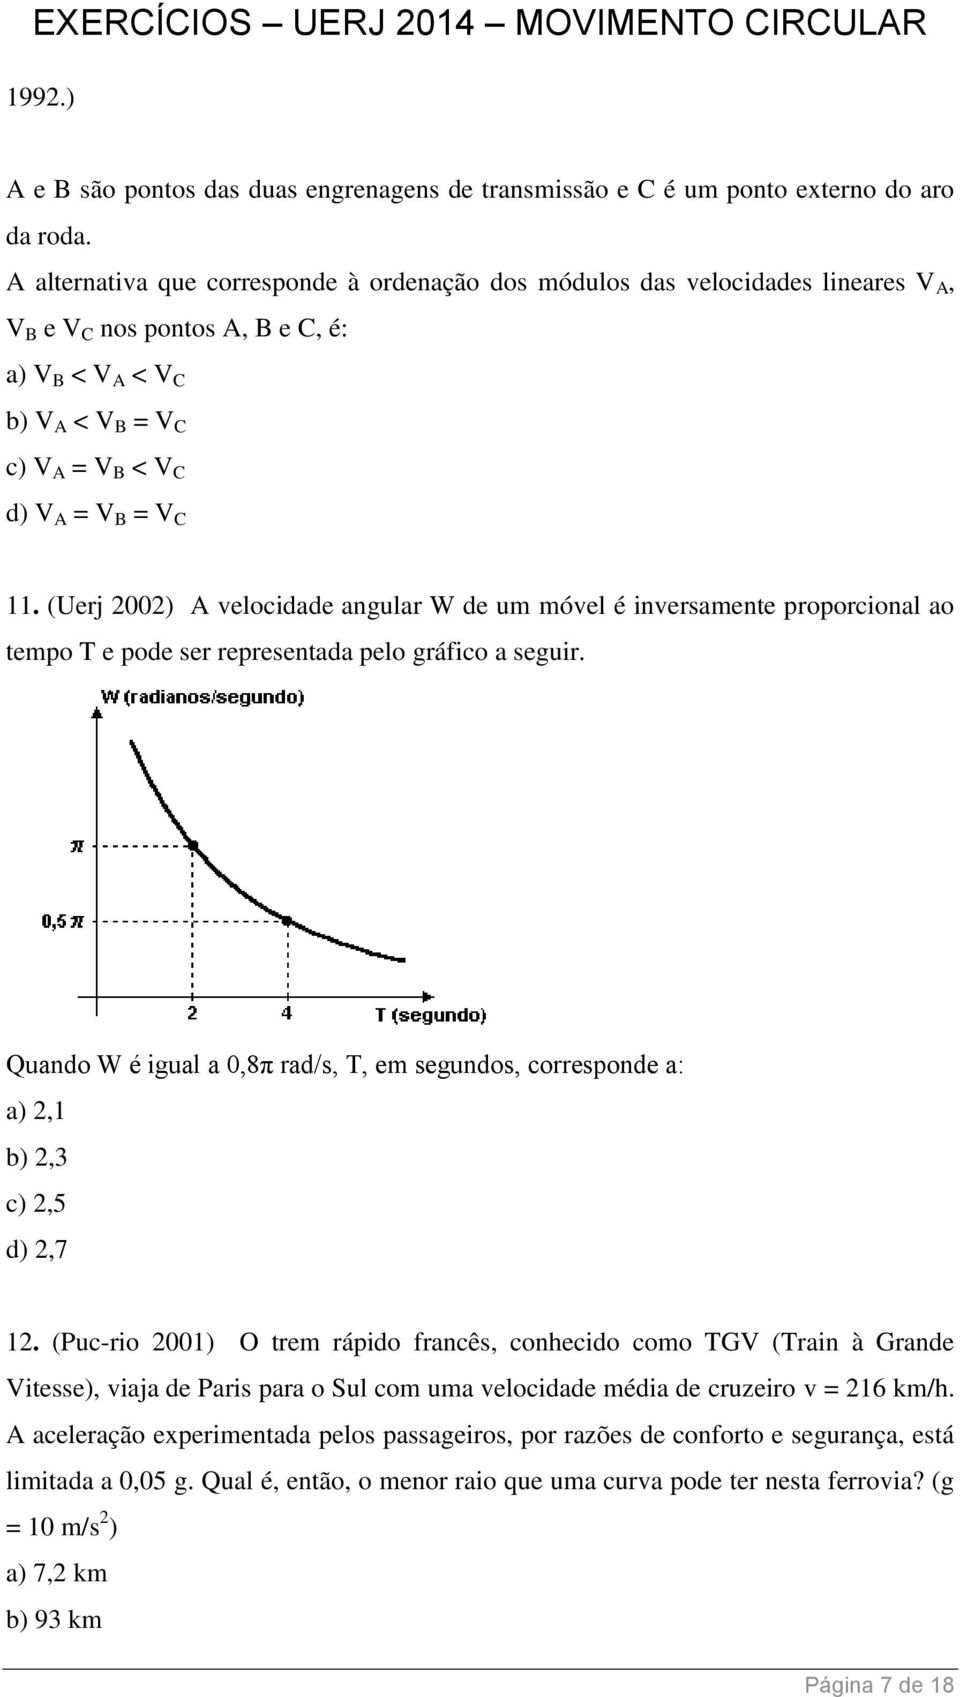 (Uerj 2002) A velocidade angular W de um móvel é inversamente proporcional ao tempo T e pode ser representada pelo gráfico a seguir.